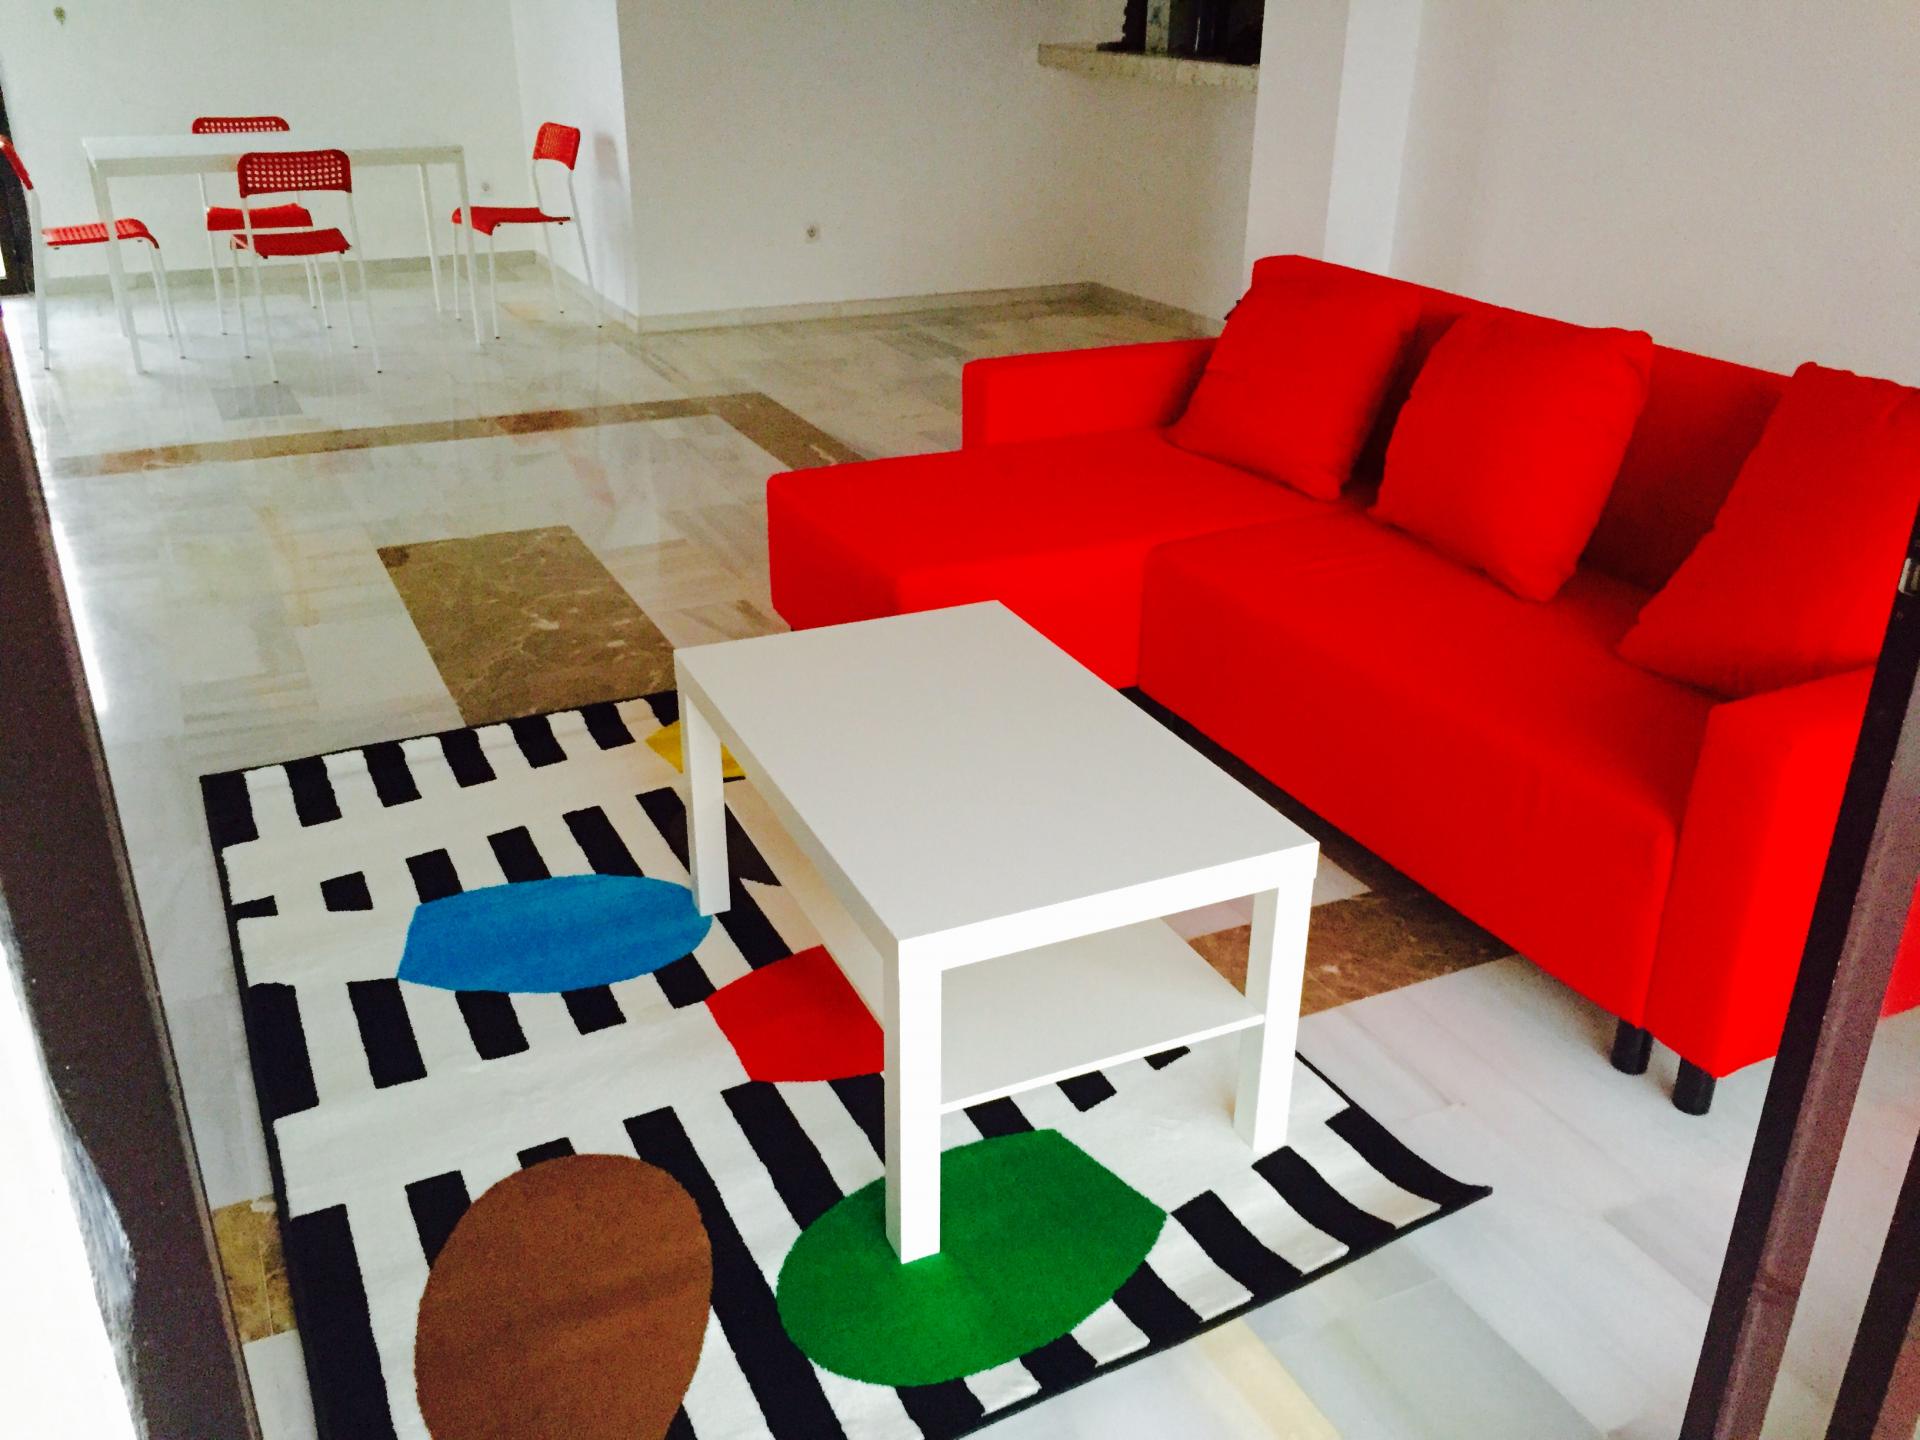 Apartment for sale in Sitio de Calahonda, Mijas Costa